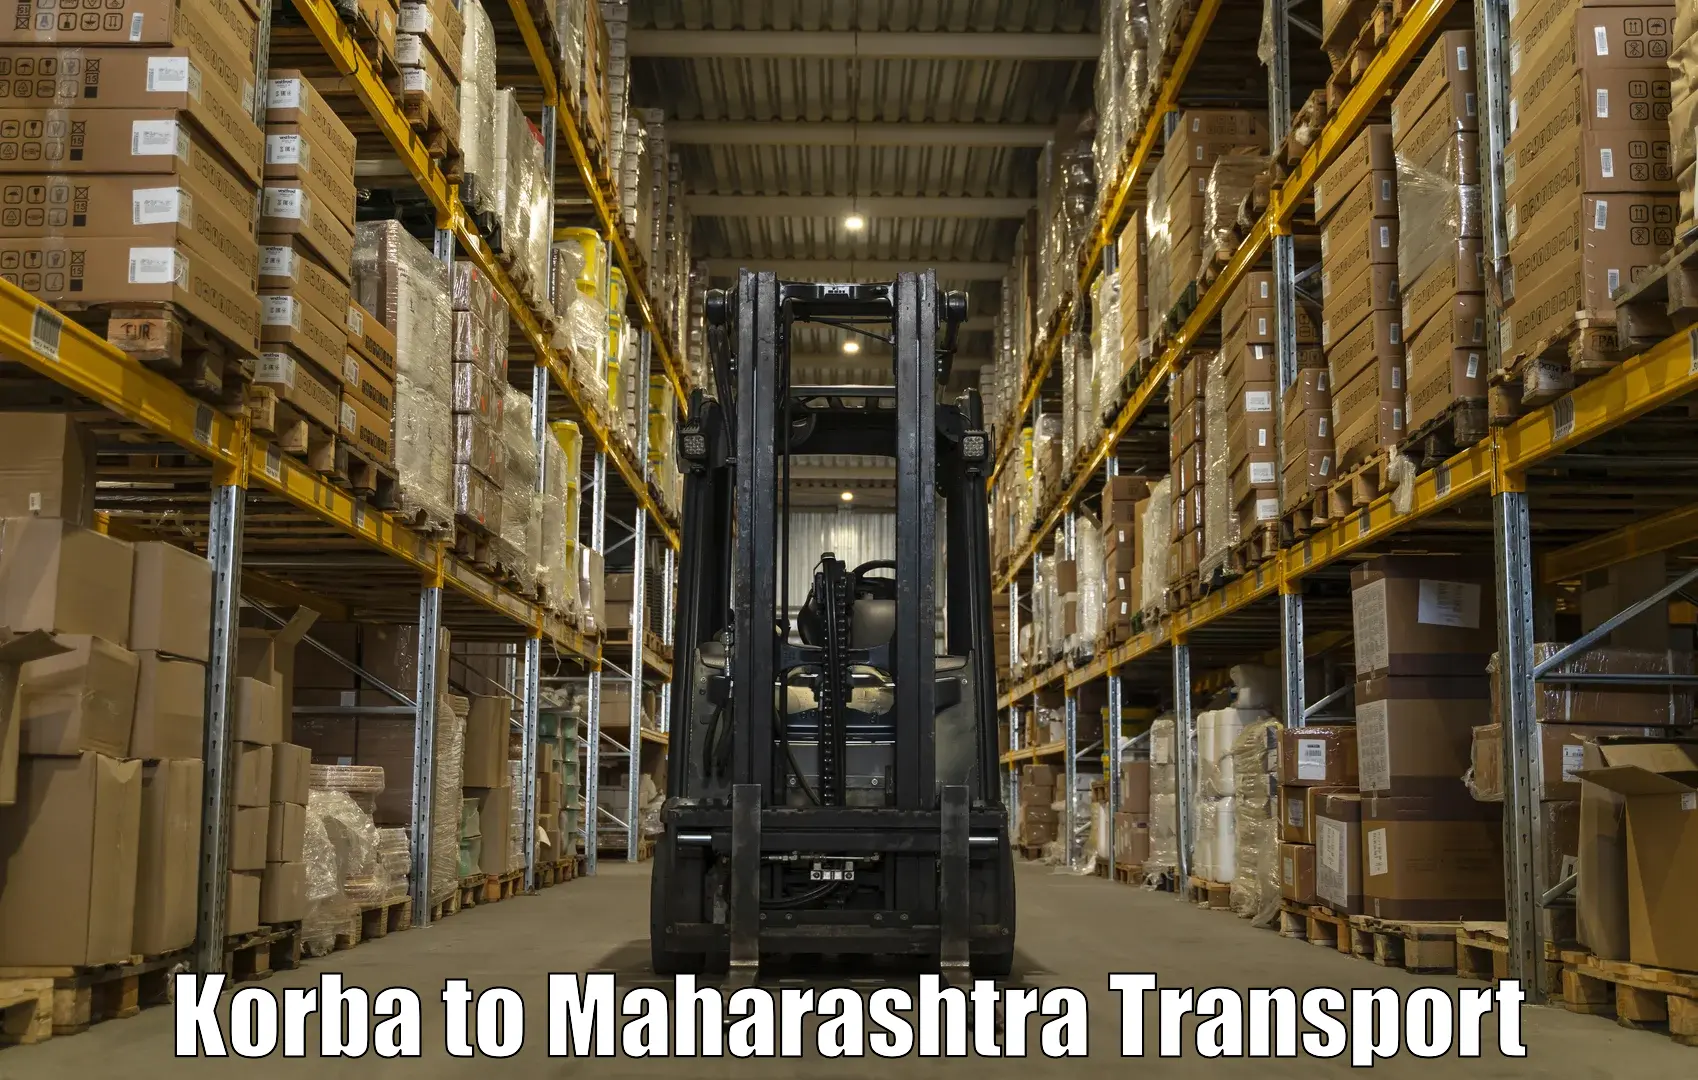 All India transport service Korba to Mahabaleshwar